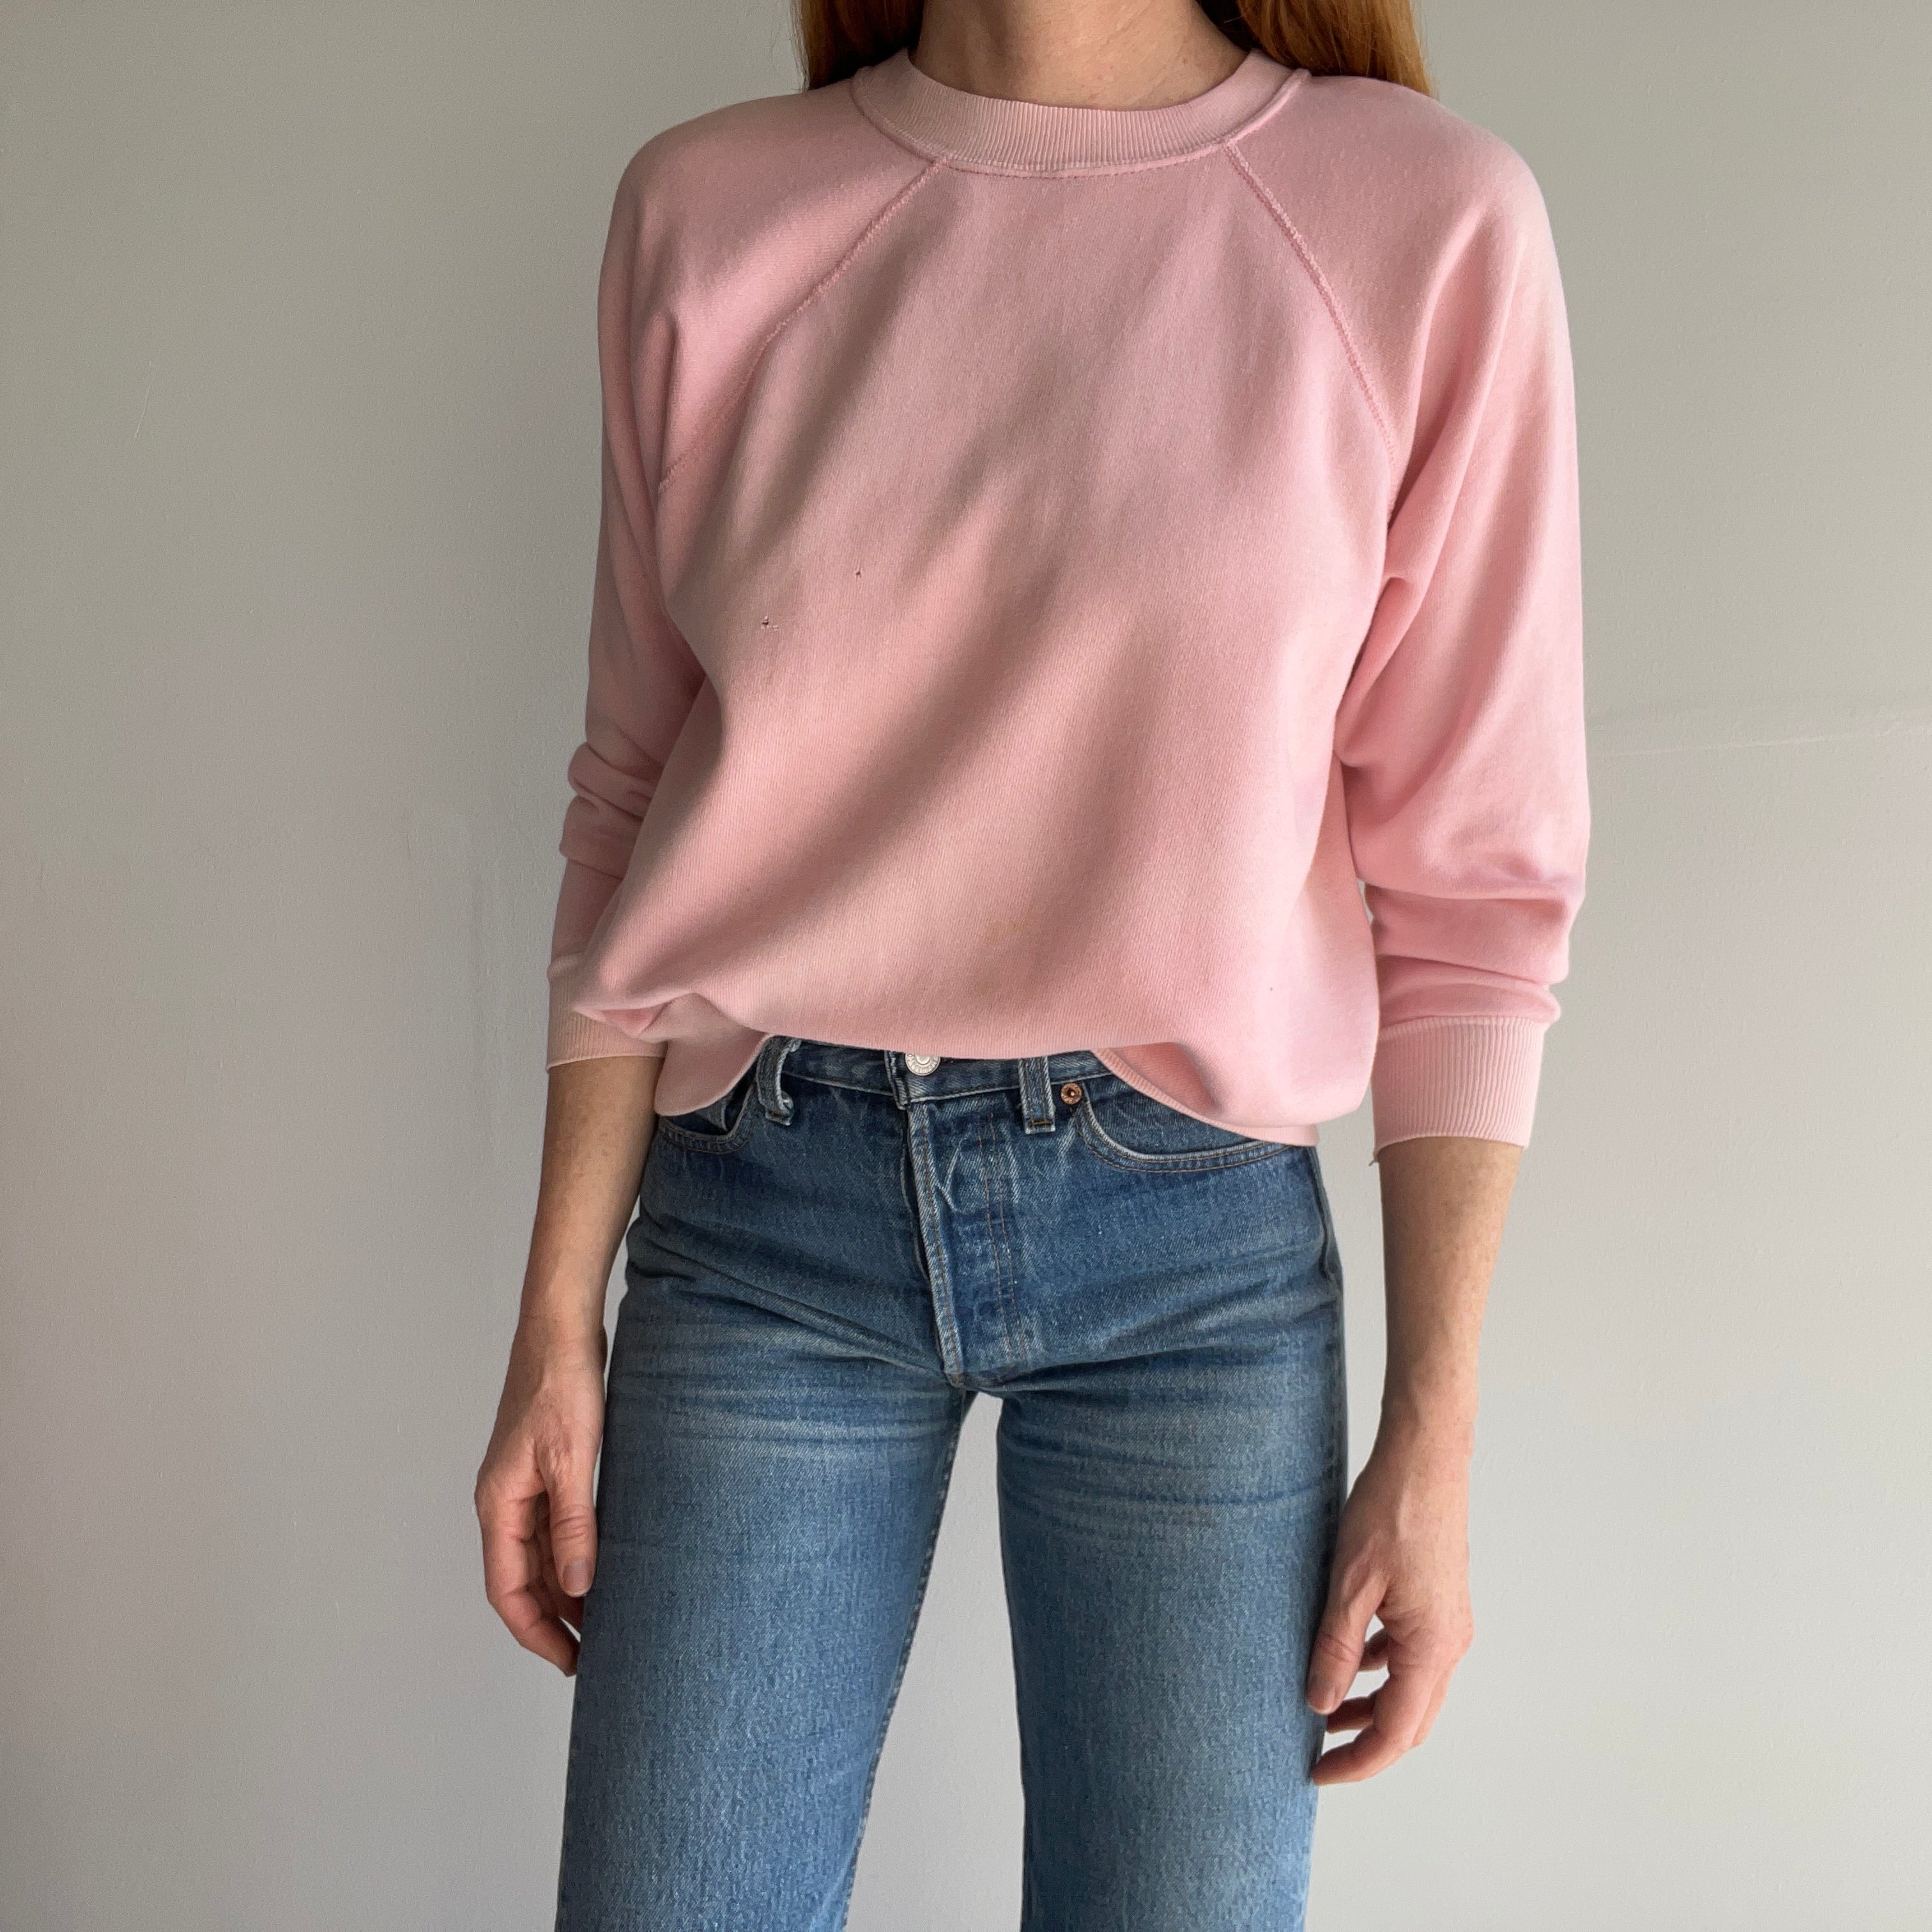 1980s American Fleece Wear Thin Soft Pink Sweatshirt